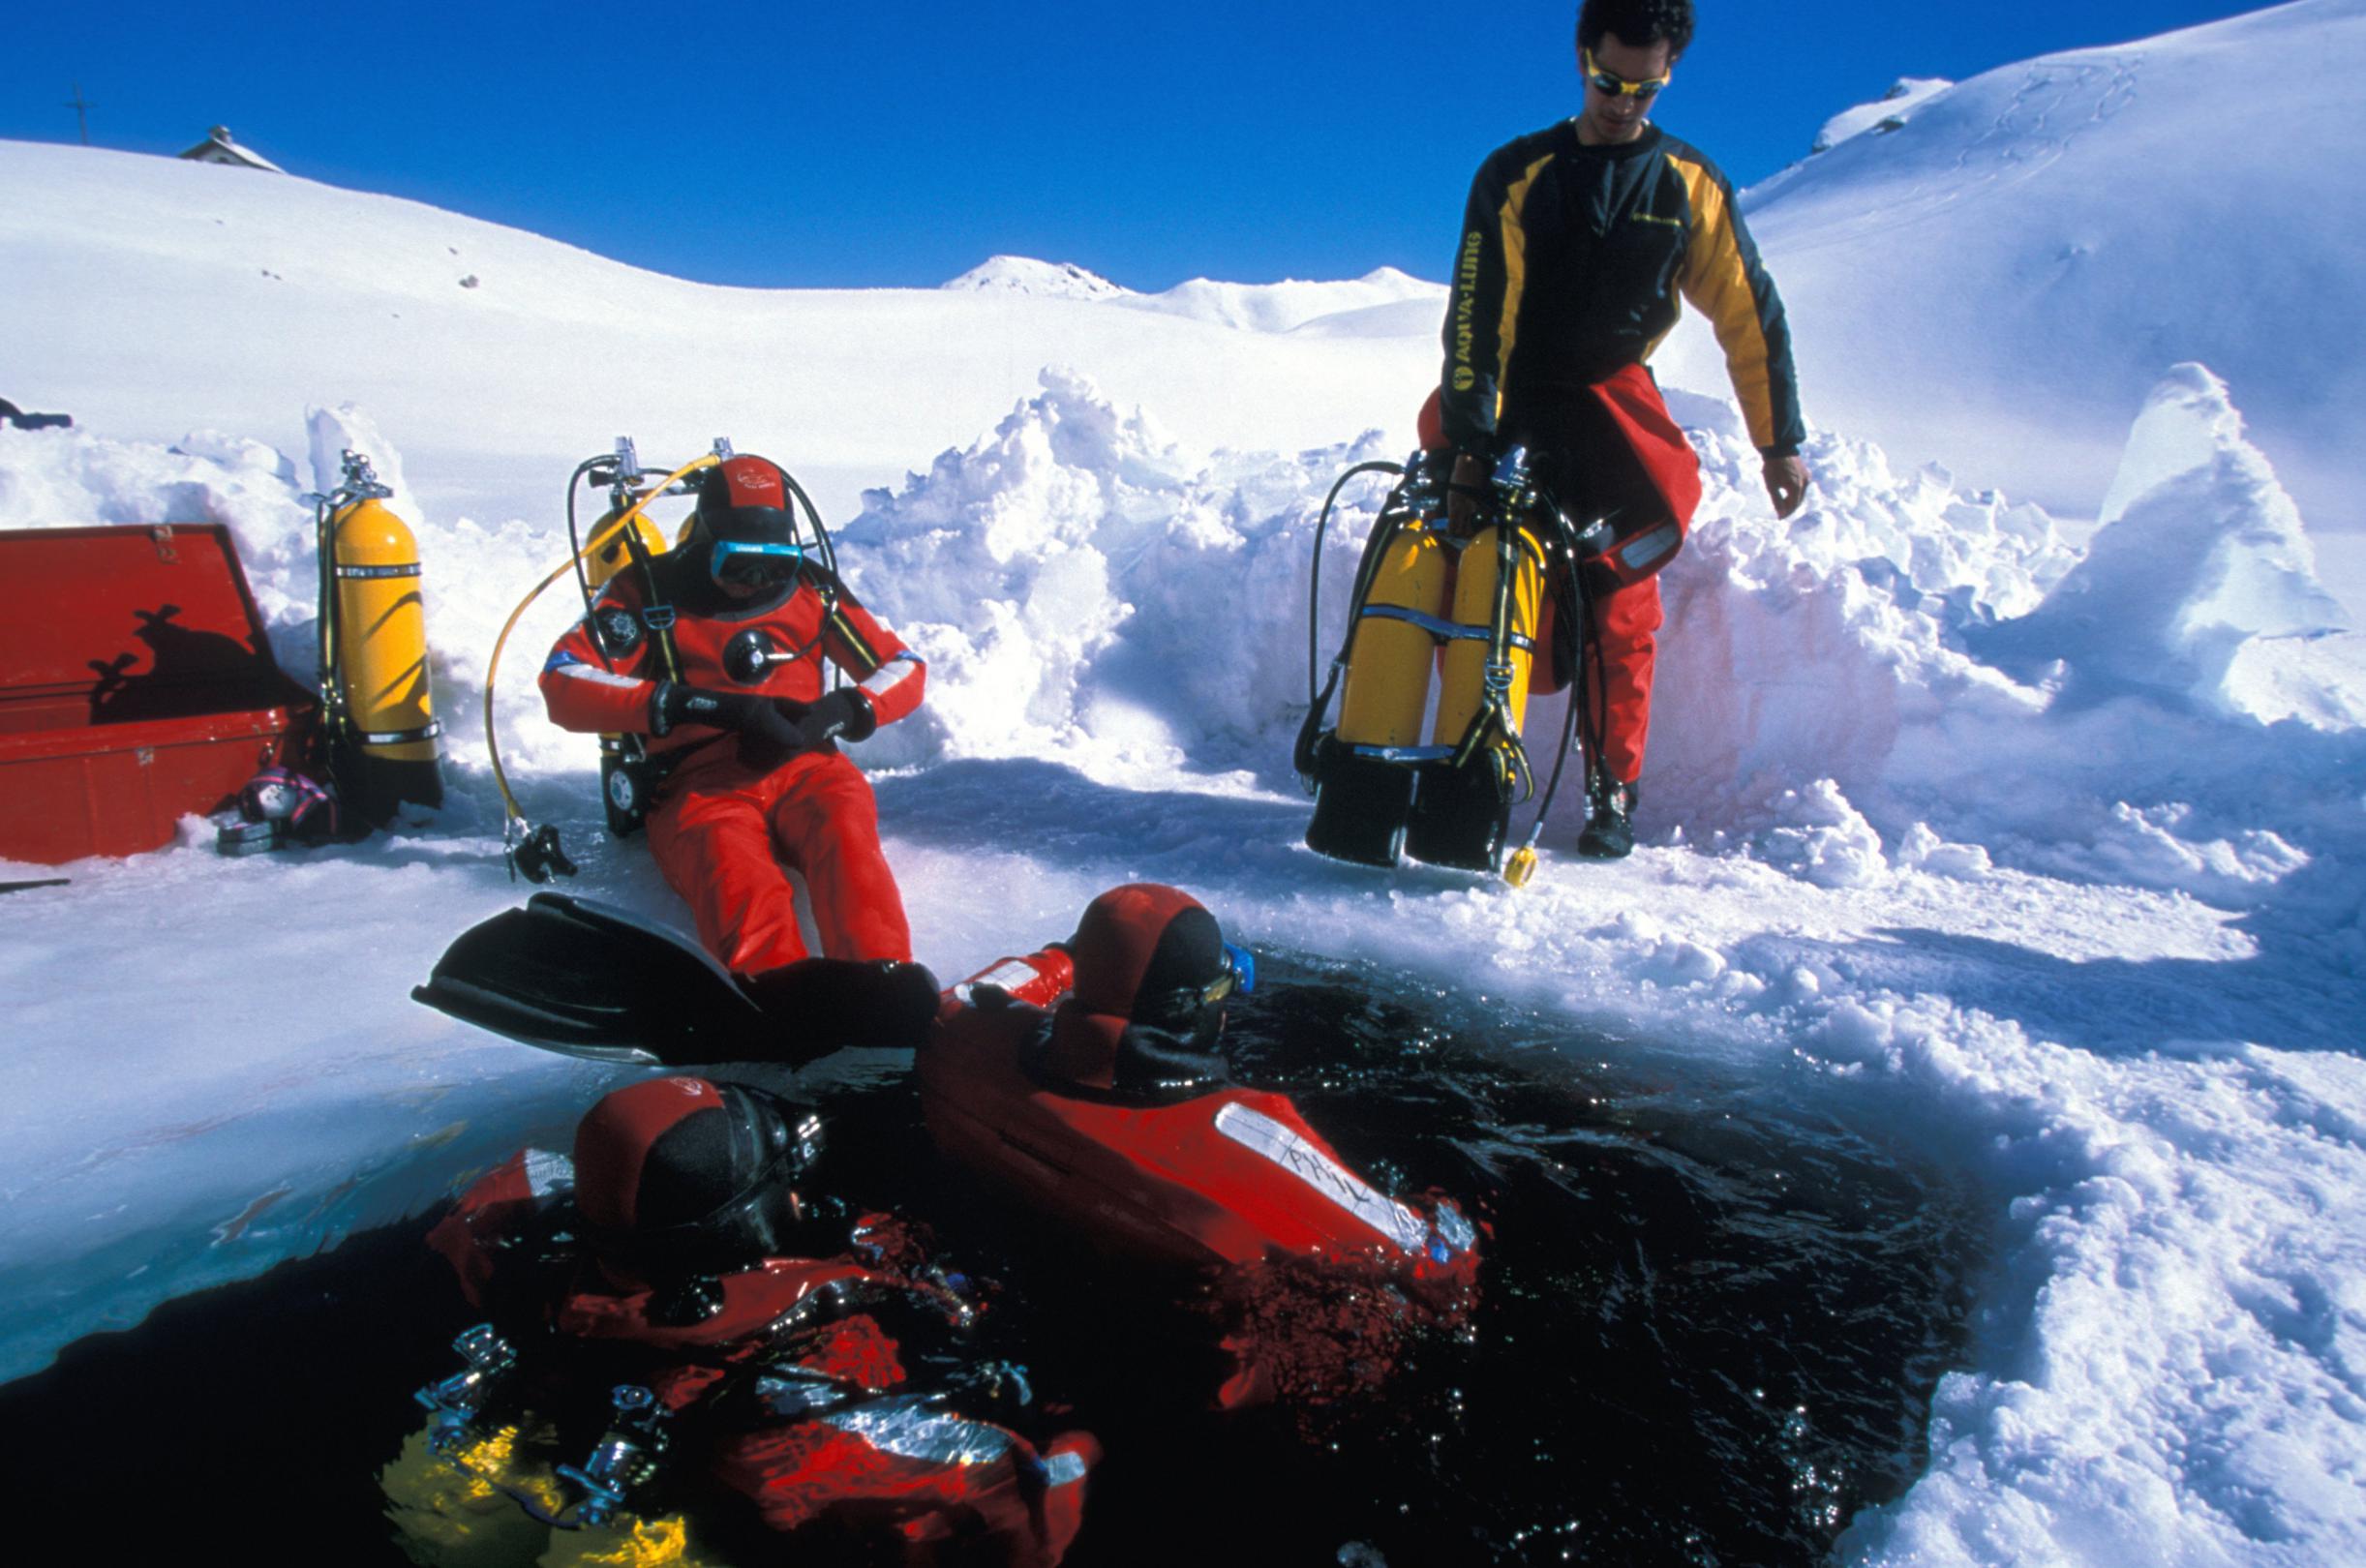 Préparation pour la plongée sous glace au lac Sainte Anne au dessus de Ceillac dans le Queyras, à 2409 mètres -Hautes-Alpes - France